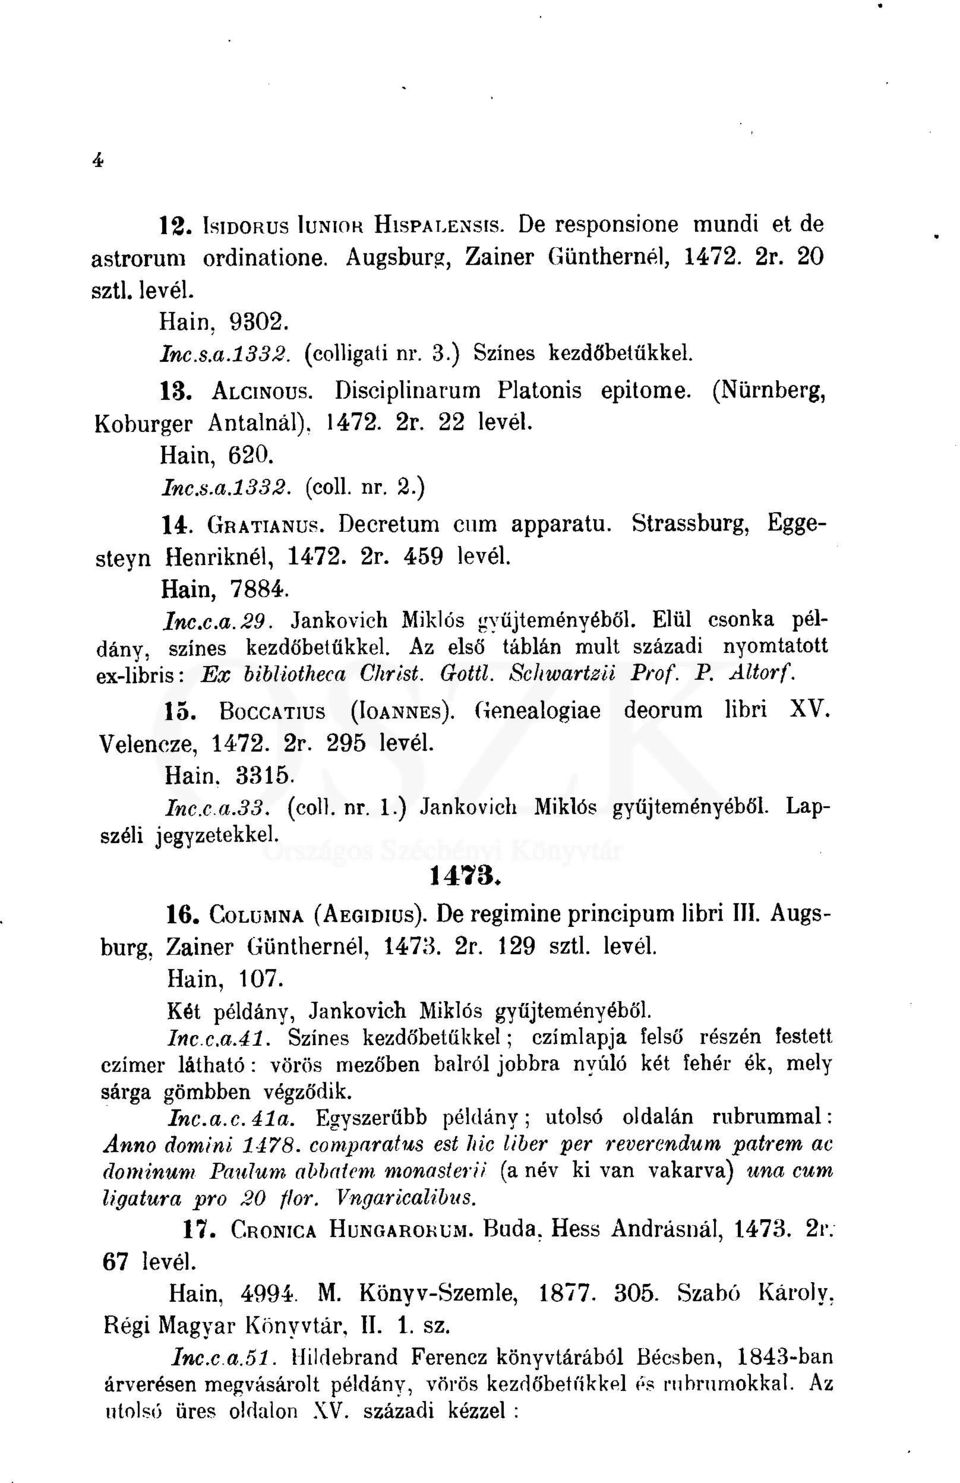 Strassburg, Eggesteyn Henriknél, 1472. 2r. 459 levél. Hain, 7884. lnc.c.a.29. Jankovich Miklós gyűjteményéből. Elül csonka példány, színes kezdőbetűkkel.